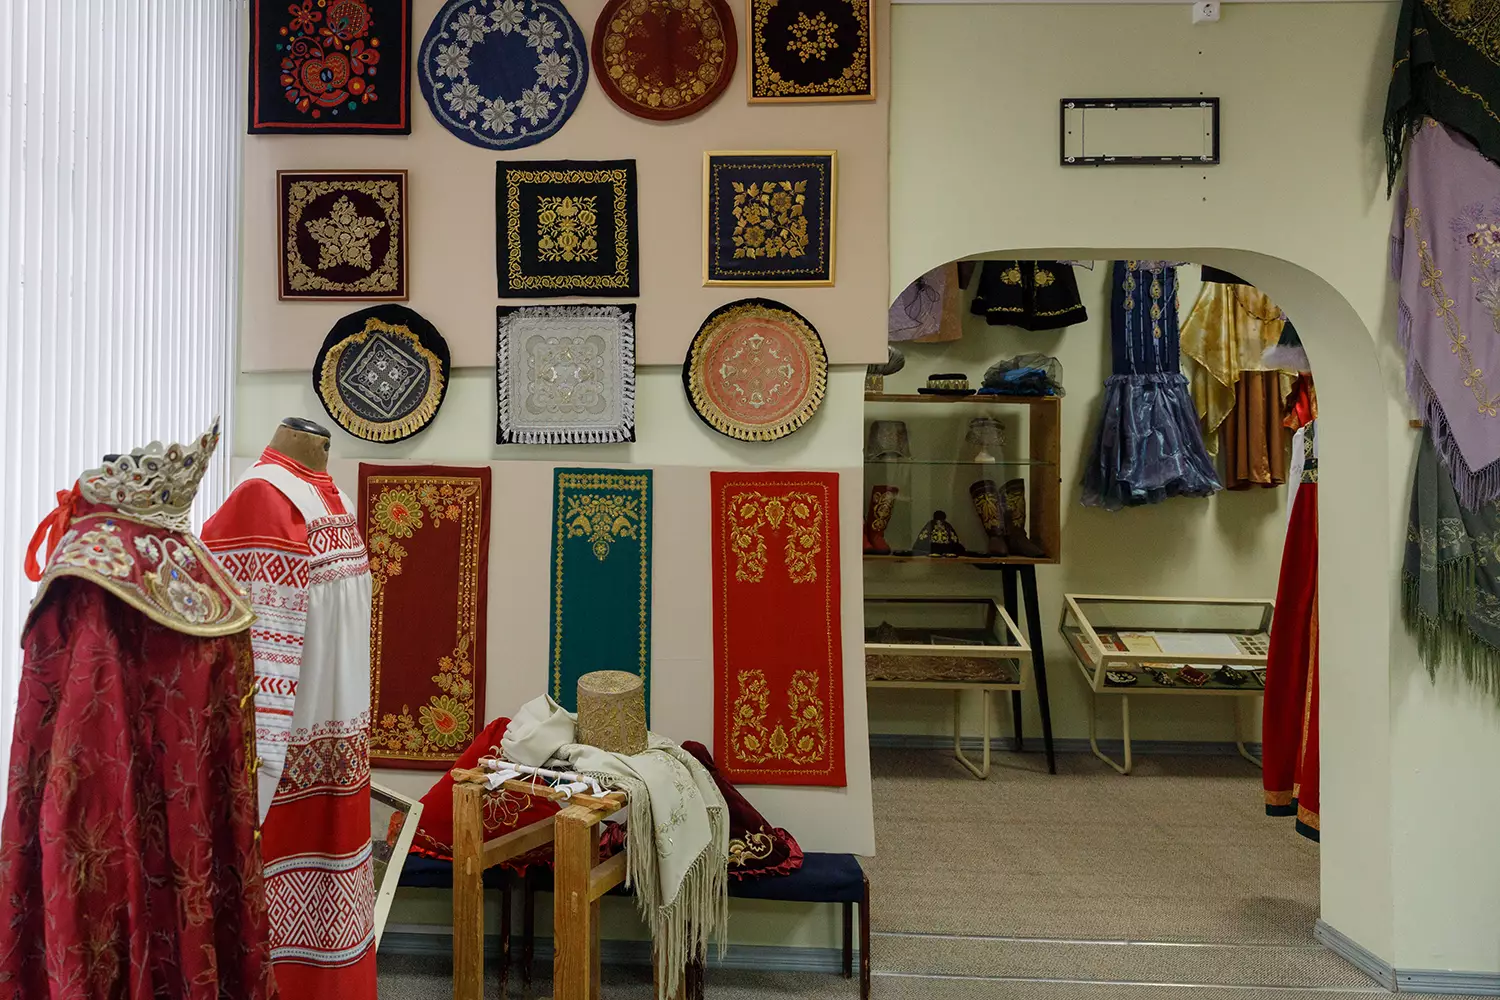 Музей золотного шитья и прикладного искусства отделения золотного шитья Торжокского педагогического колледжа